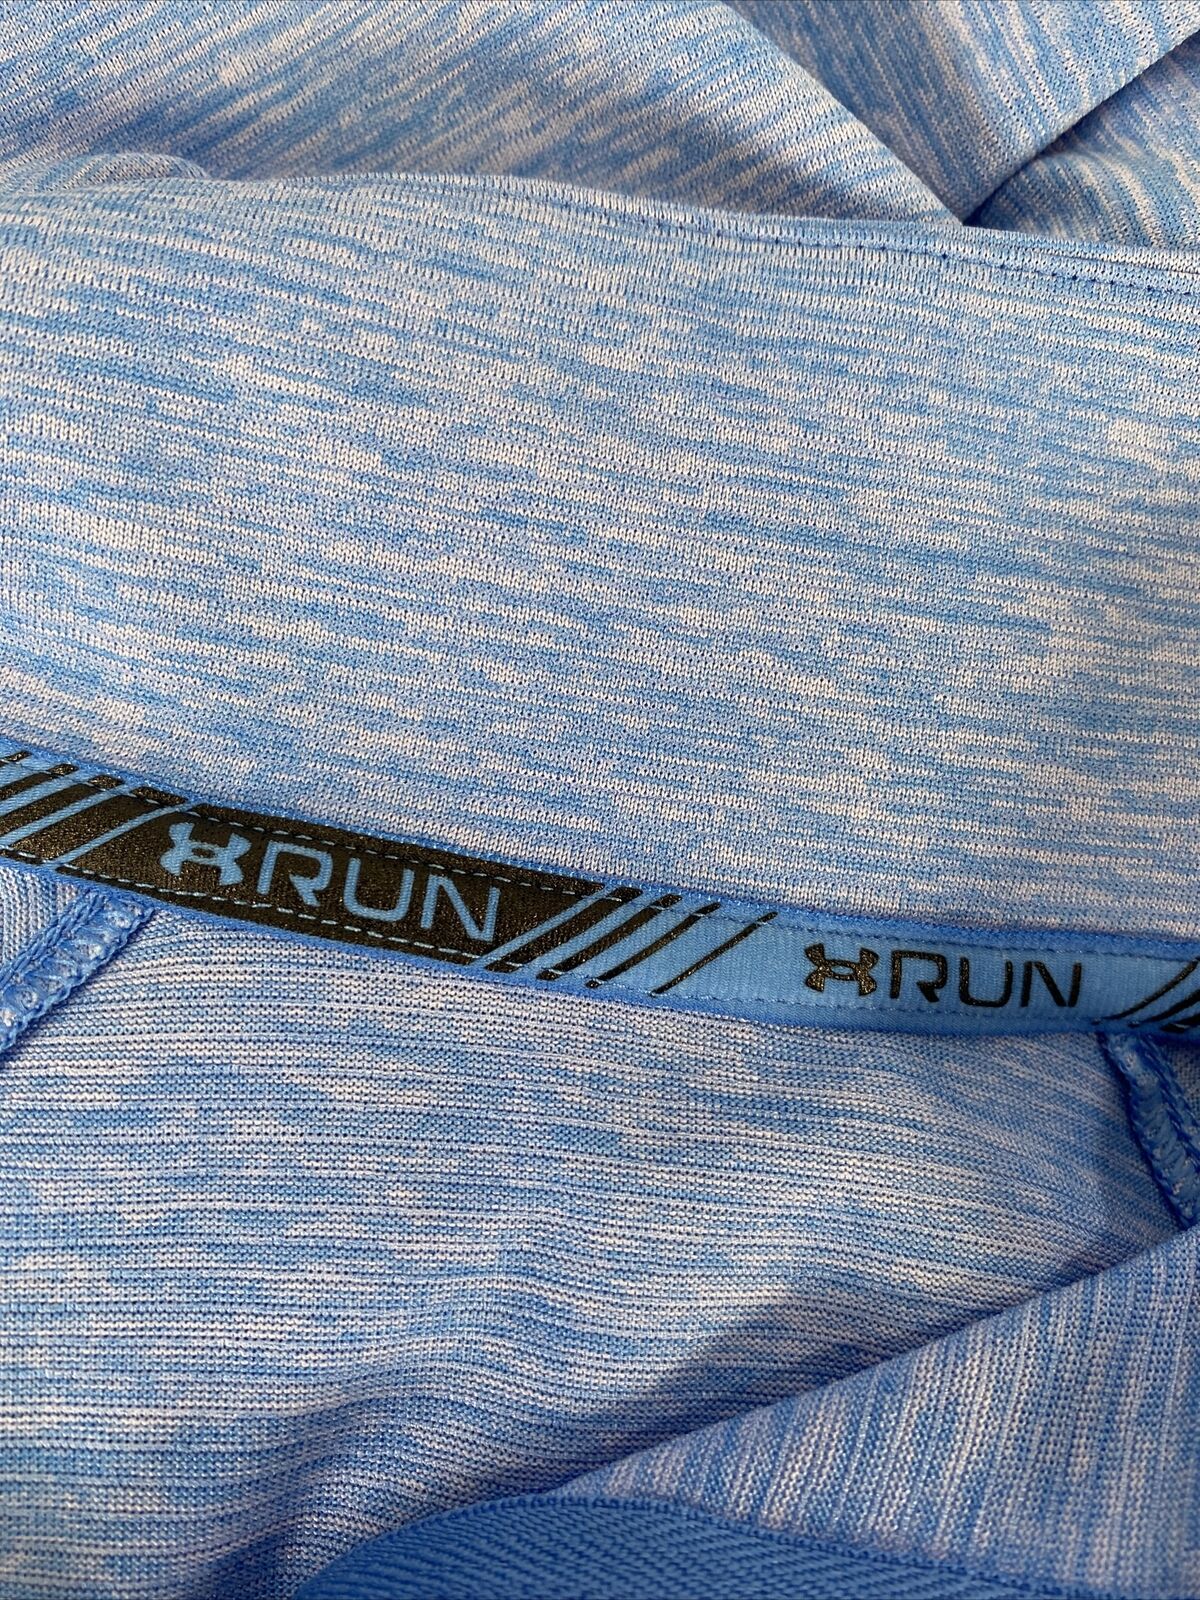 Under Armour Women's Blue Heathered Long Sleeve Running 1/2 Zip Shirt - L